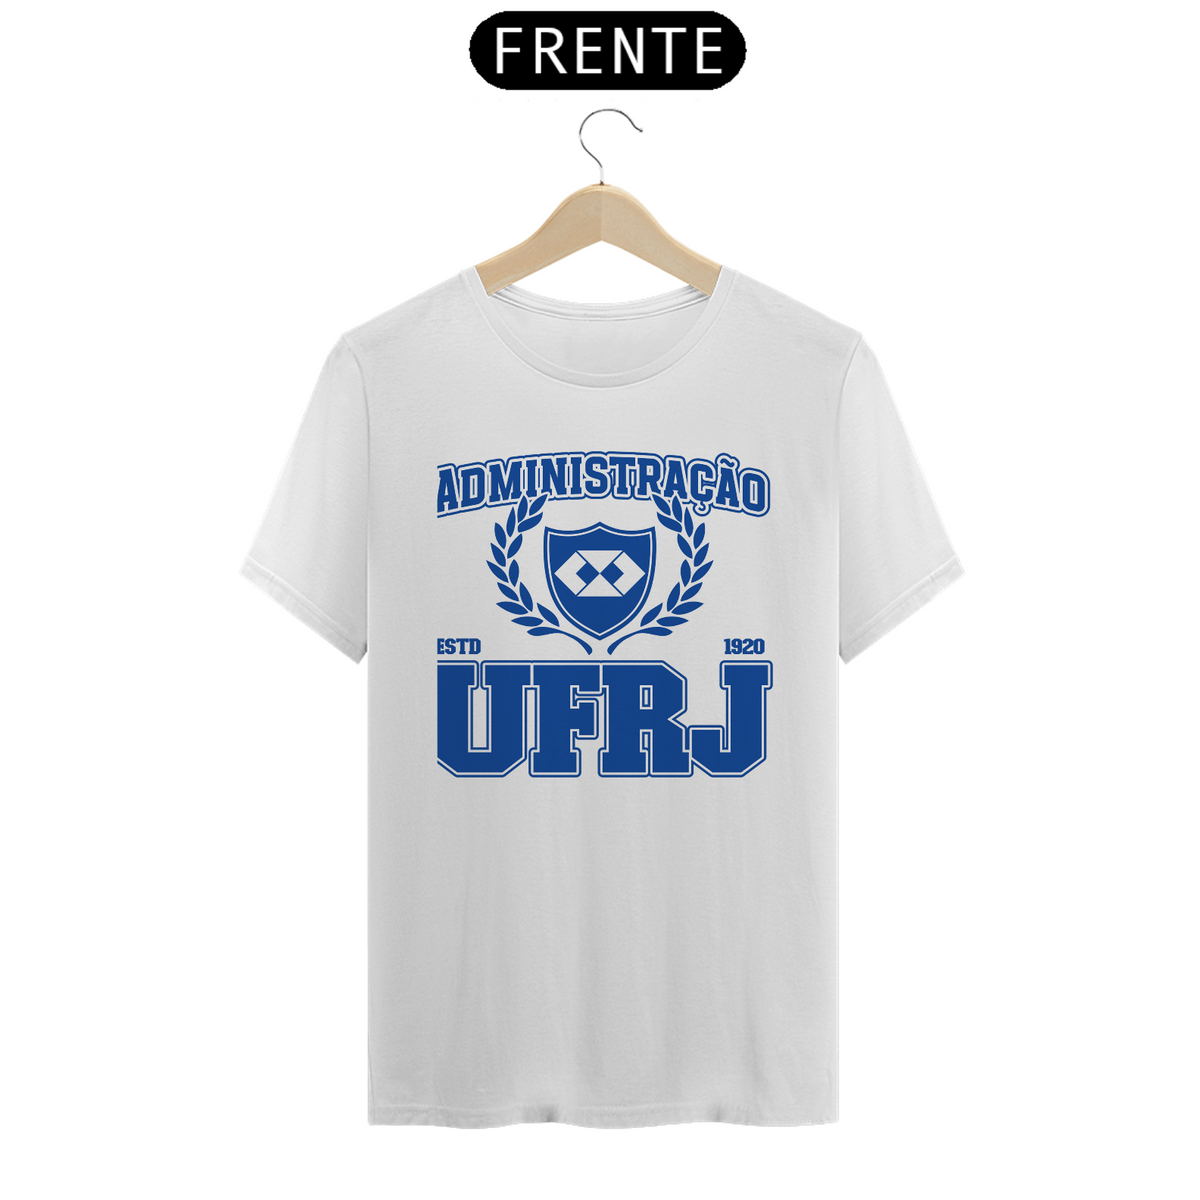 Nome do produto: UniVerso- Administração UFRJ